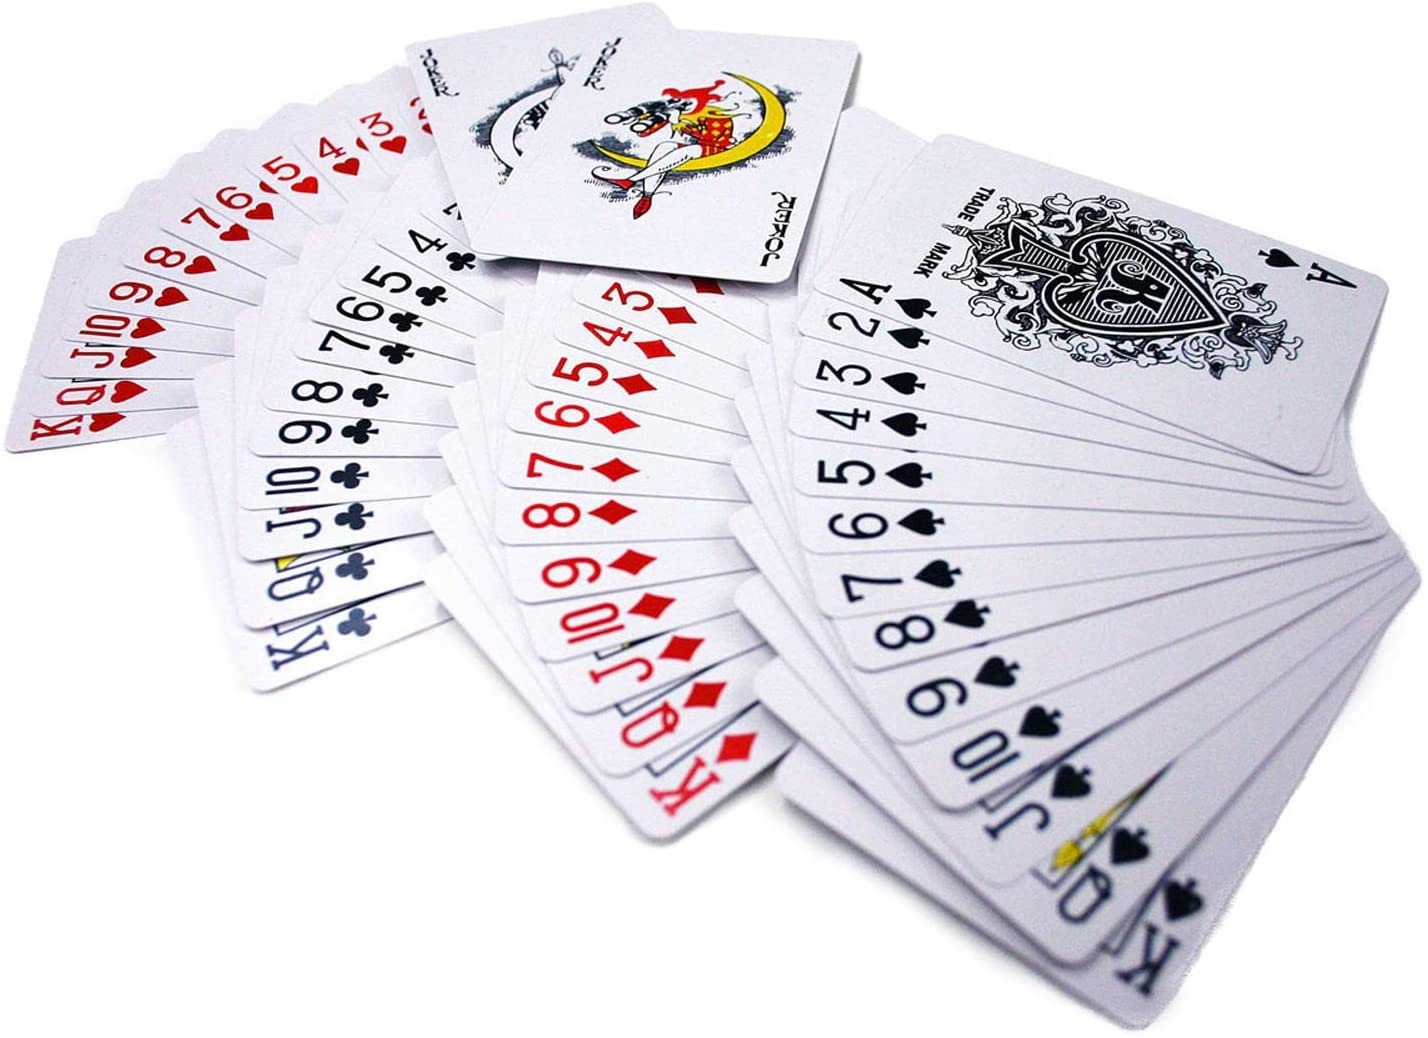 7 пик игра карточная. Покер карты. Колода карт 52. Карты игральные пластиковые. Игральная колода 52 карты.